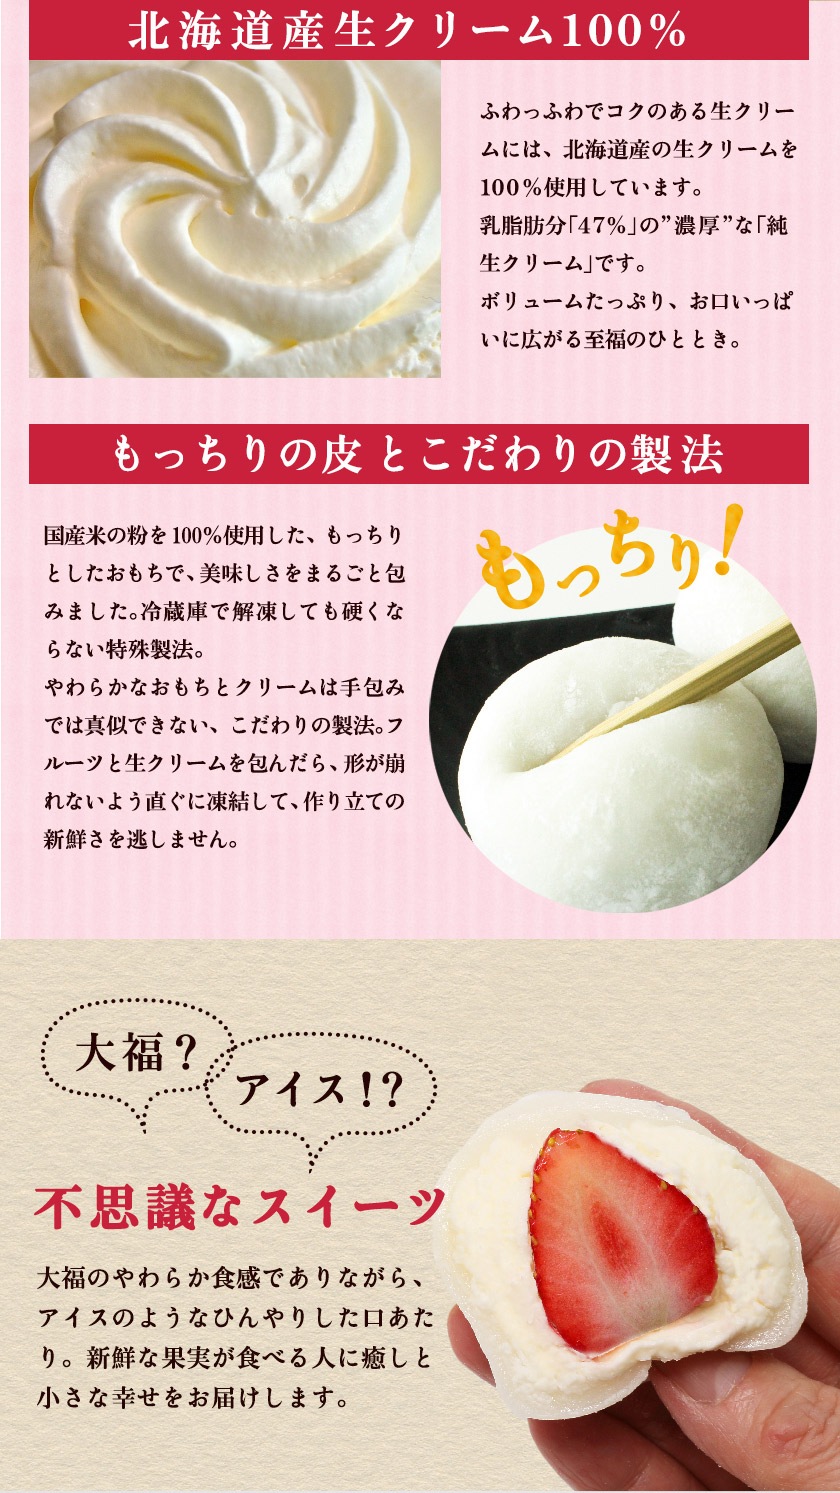 北海道産生クリームともっちり食感の皮は国産米粉を使用